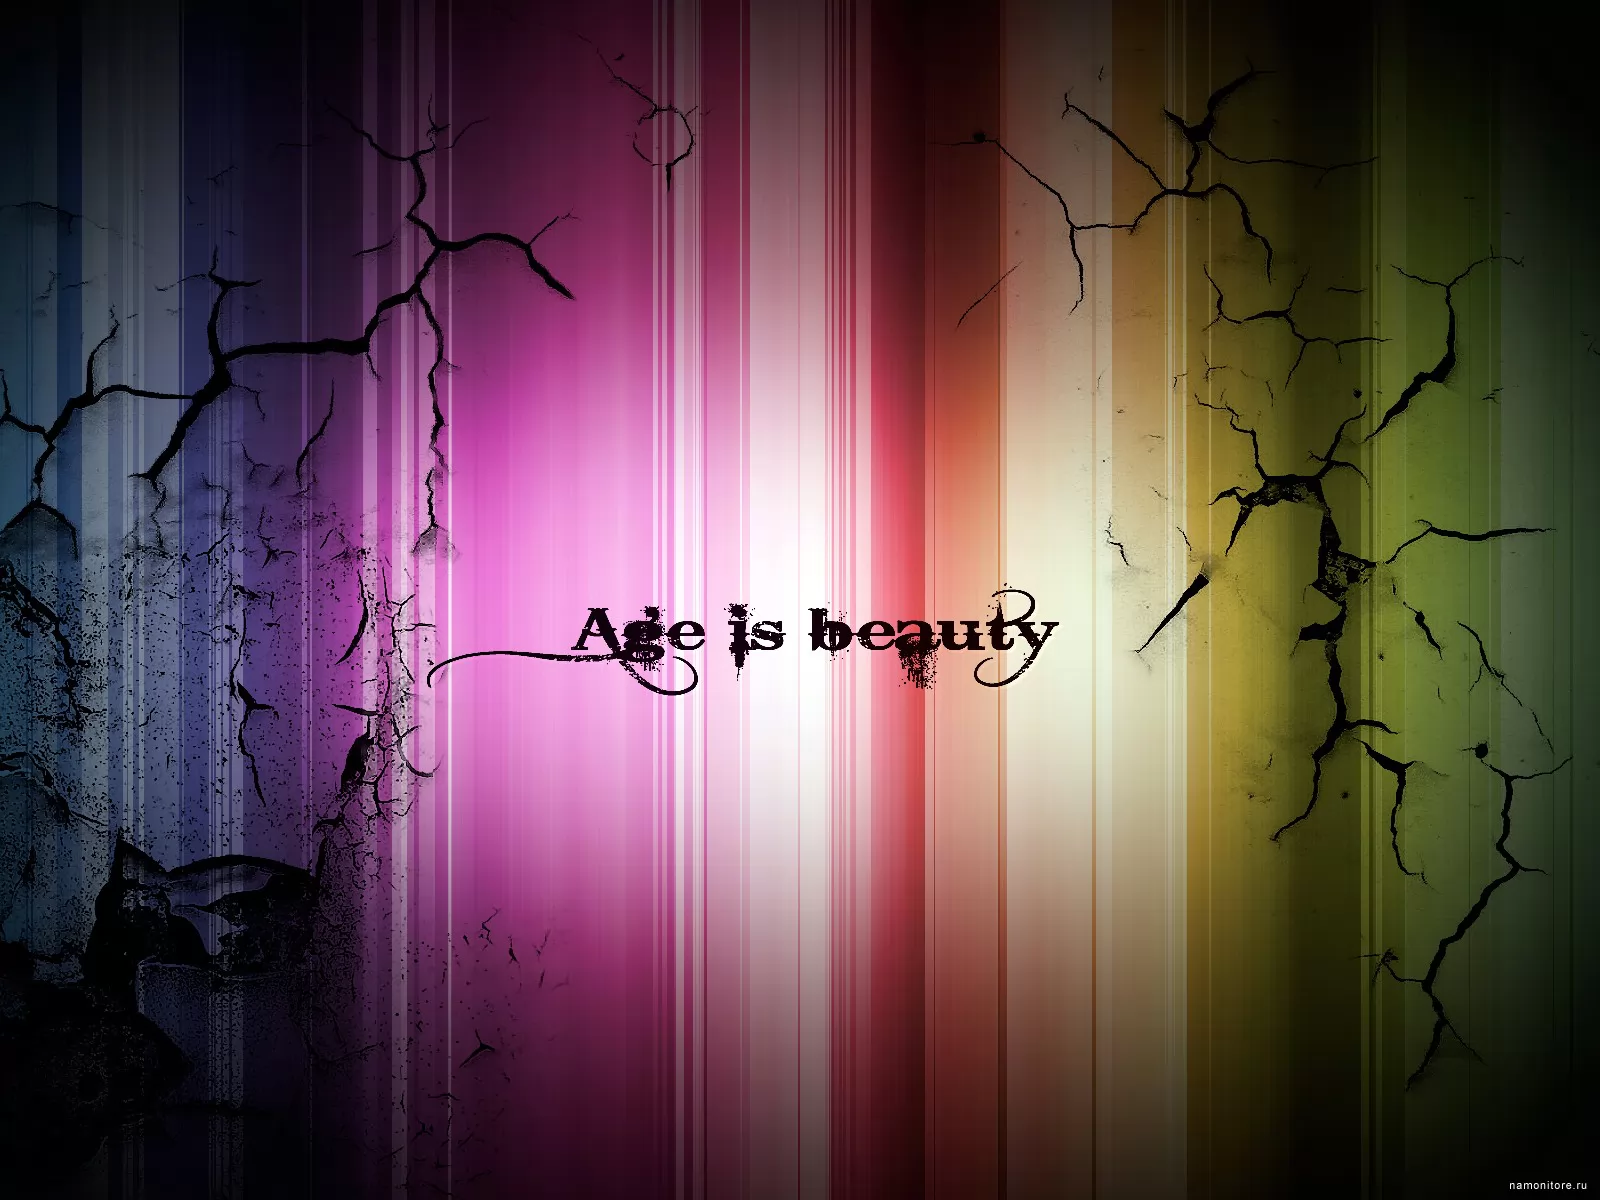 Age is beauty,  